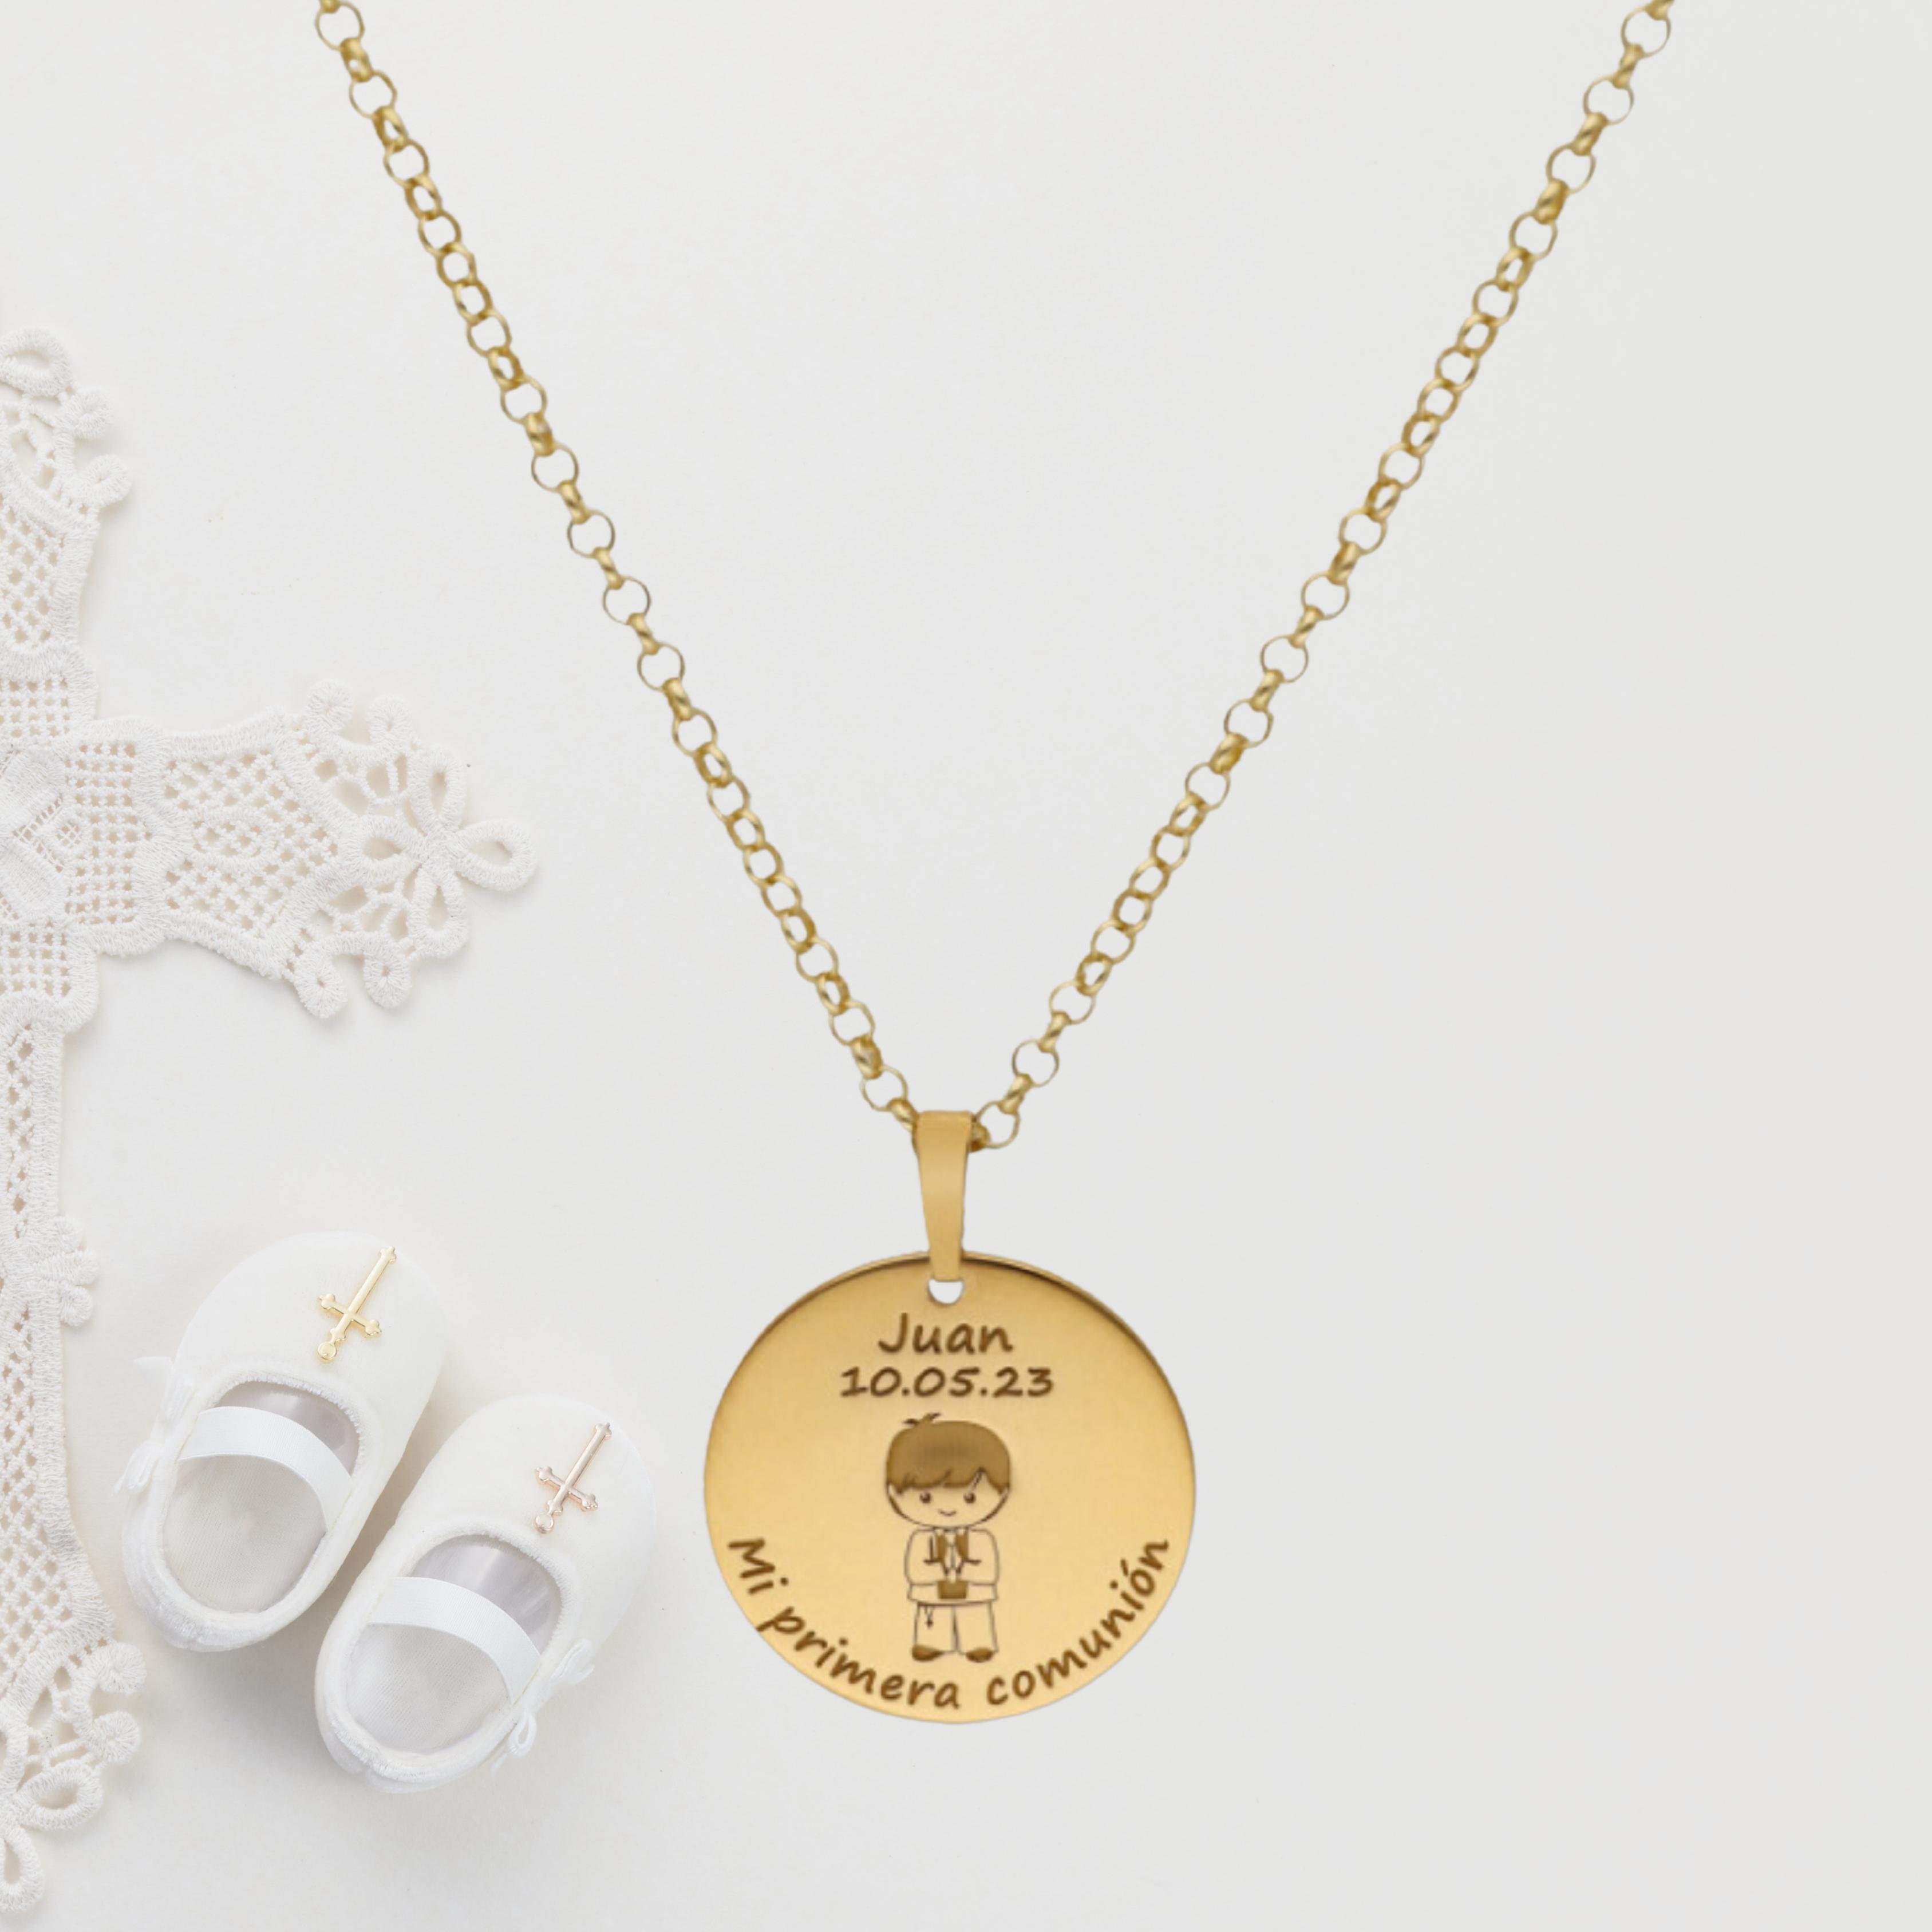 Imagen principal del producto Colgante Medalla Niño "Mi primera comunión" Plata ...